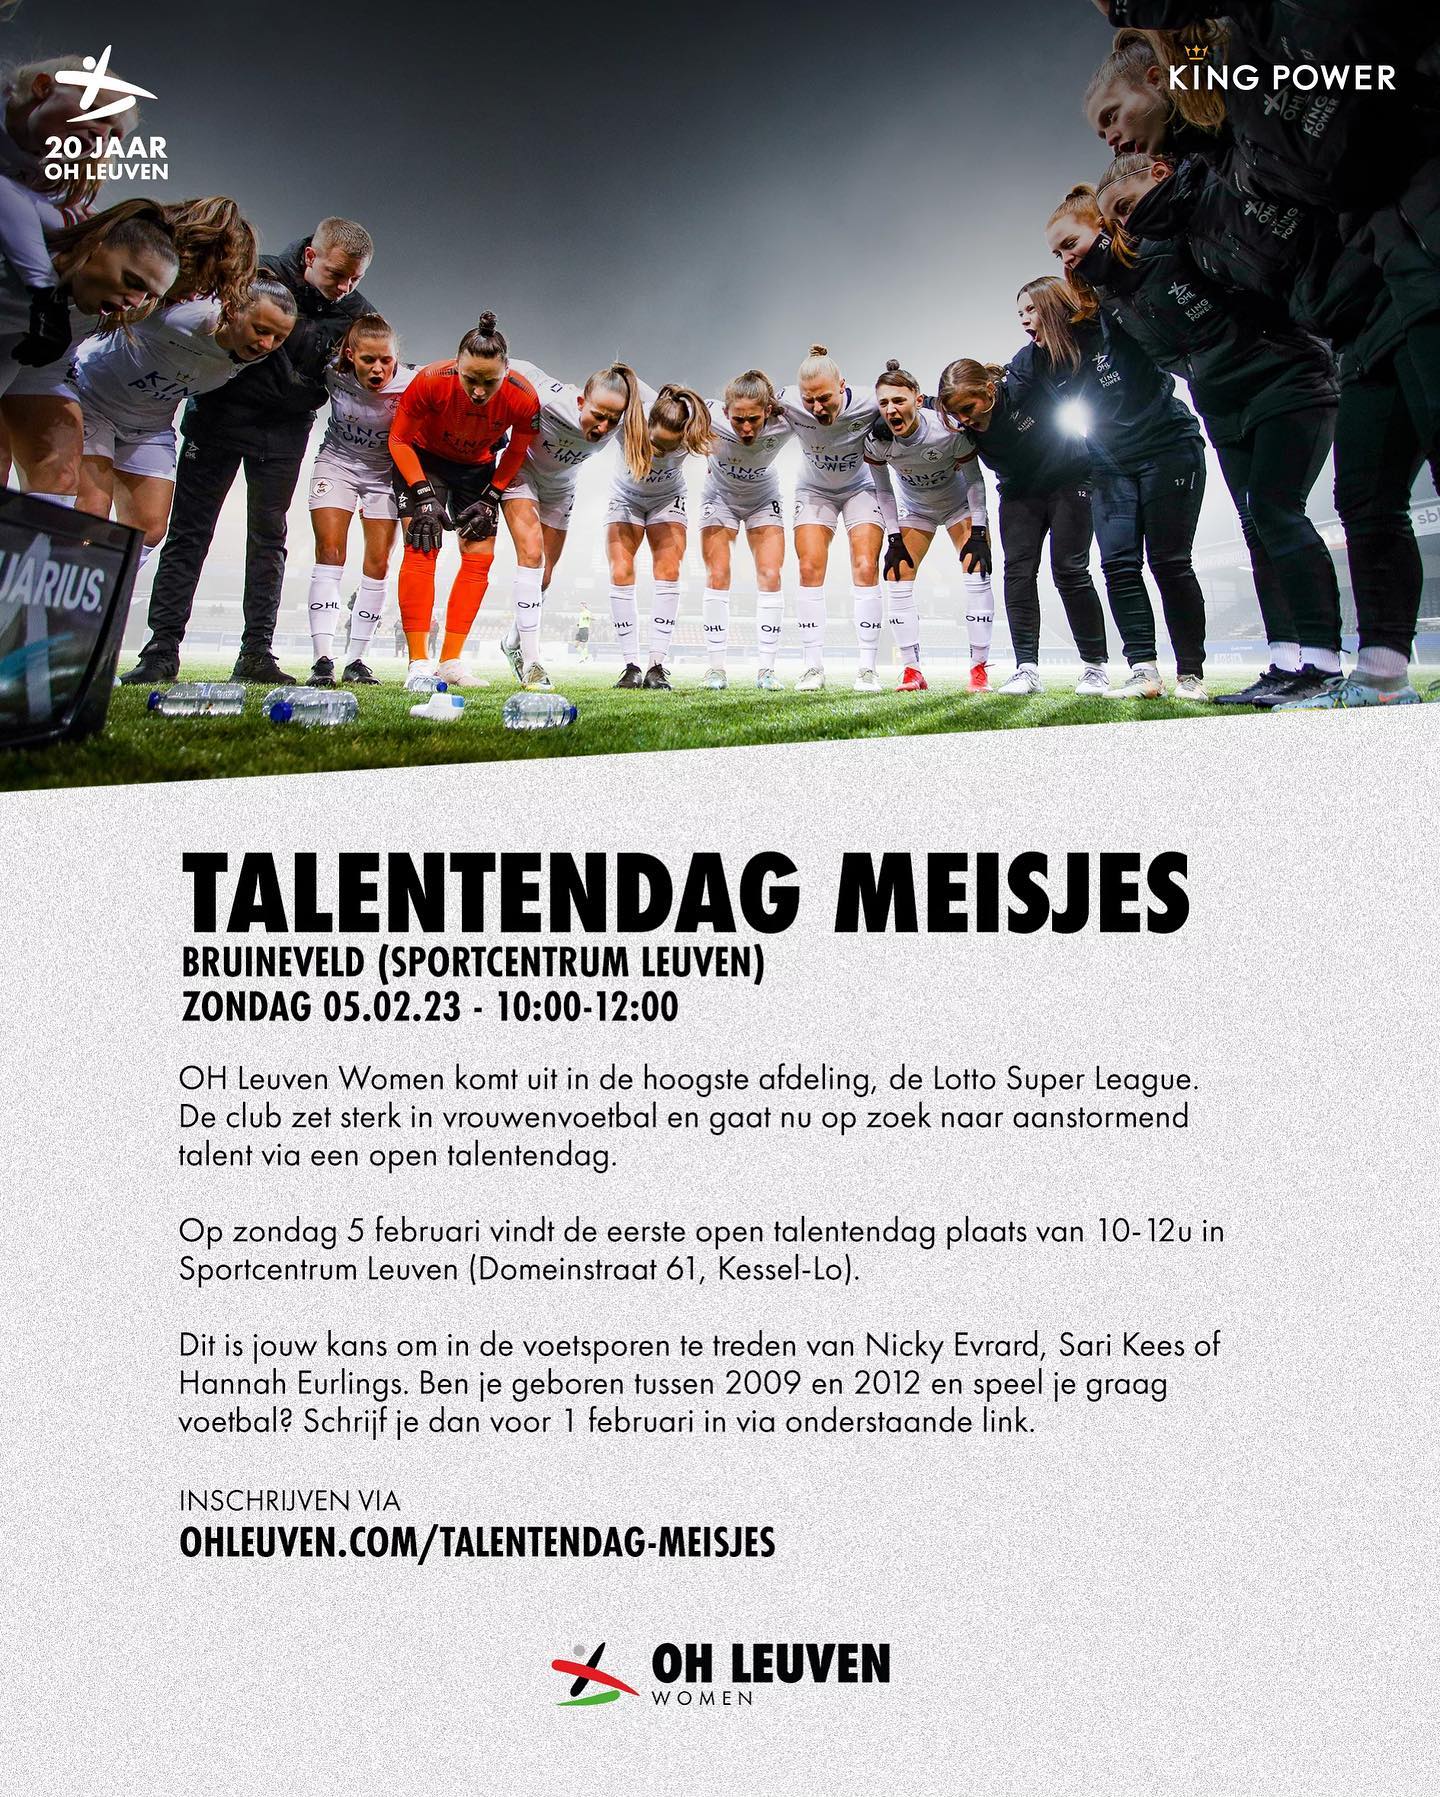 OH Leuven organiseert open talentendag voor meisjes op zondag 5 februari